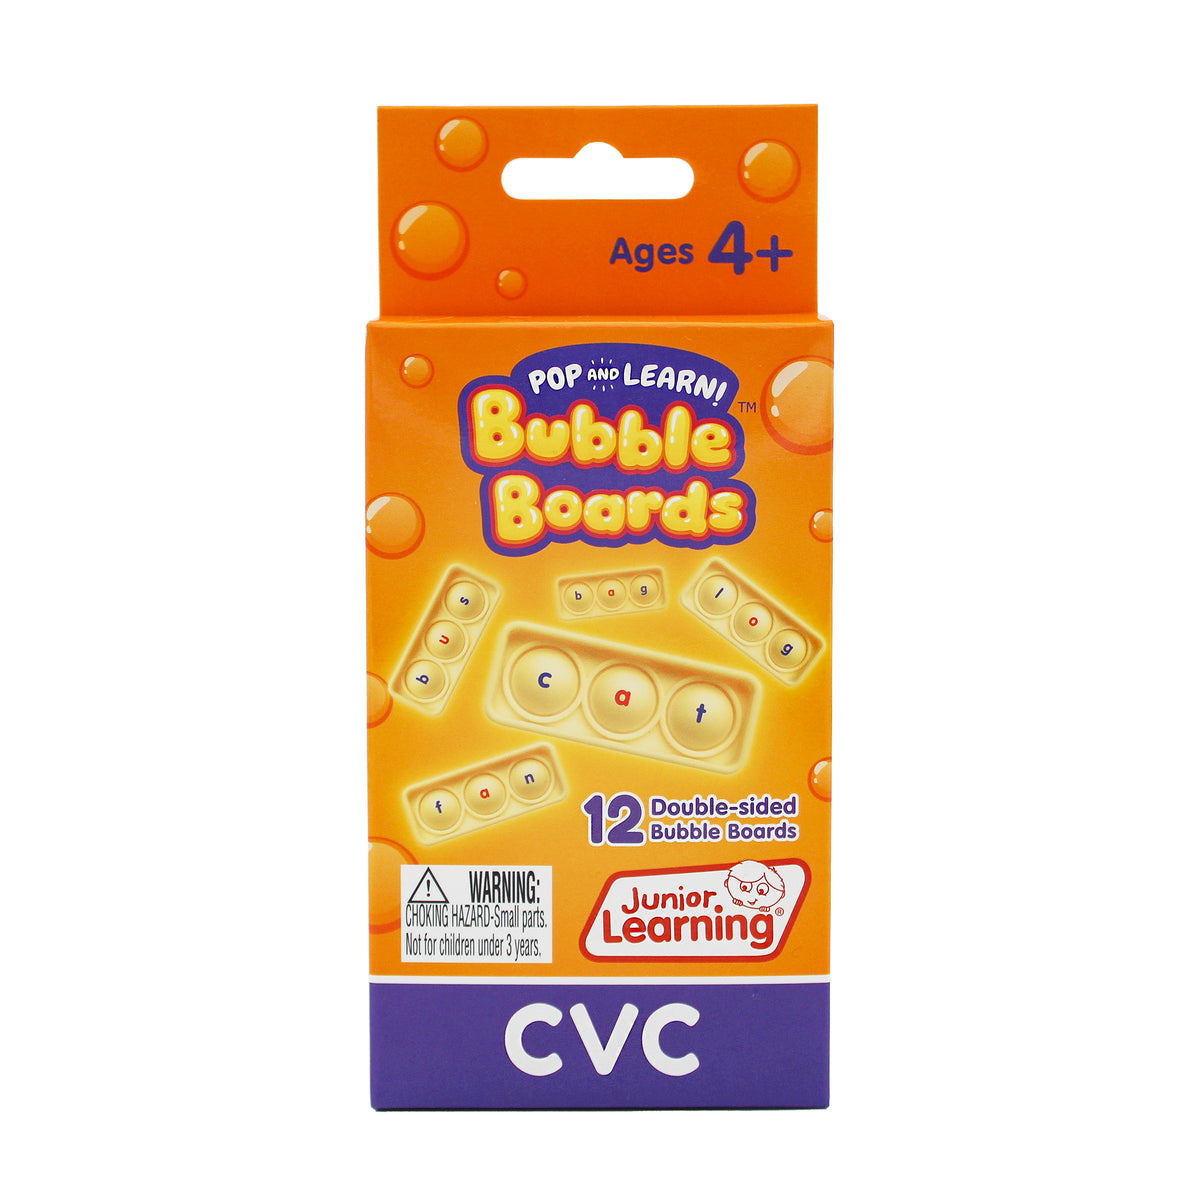 CVC Bubble Boards